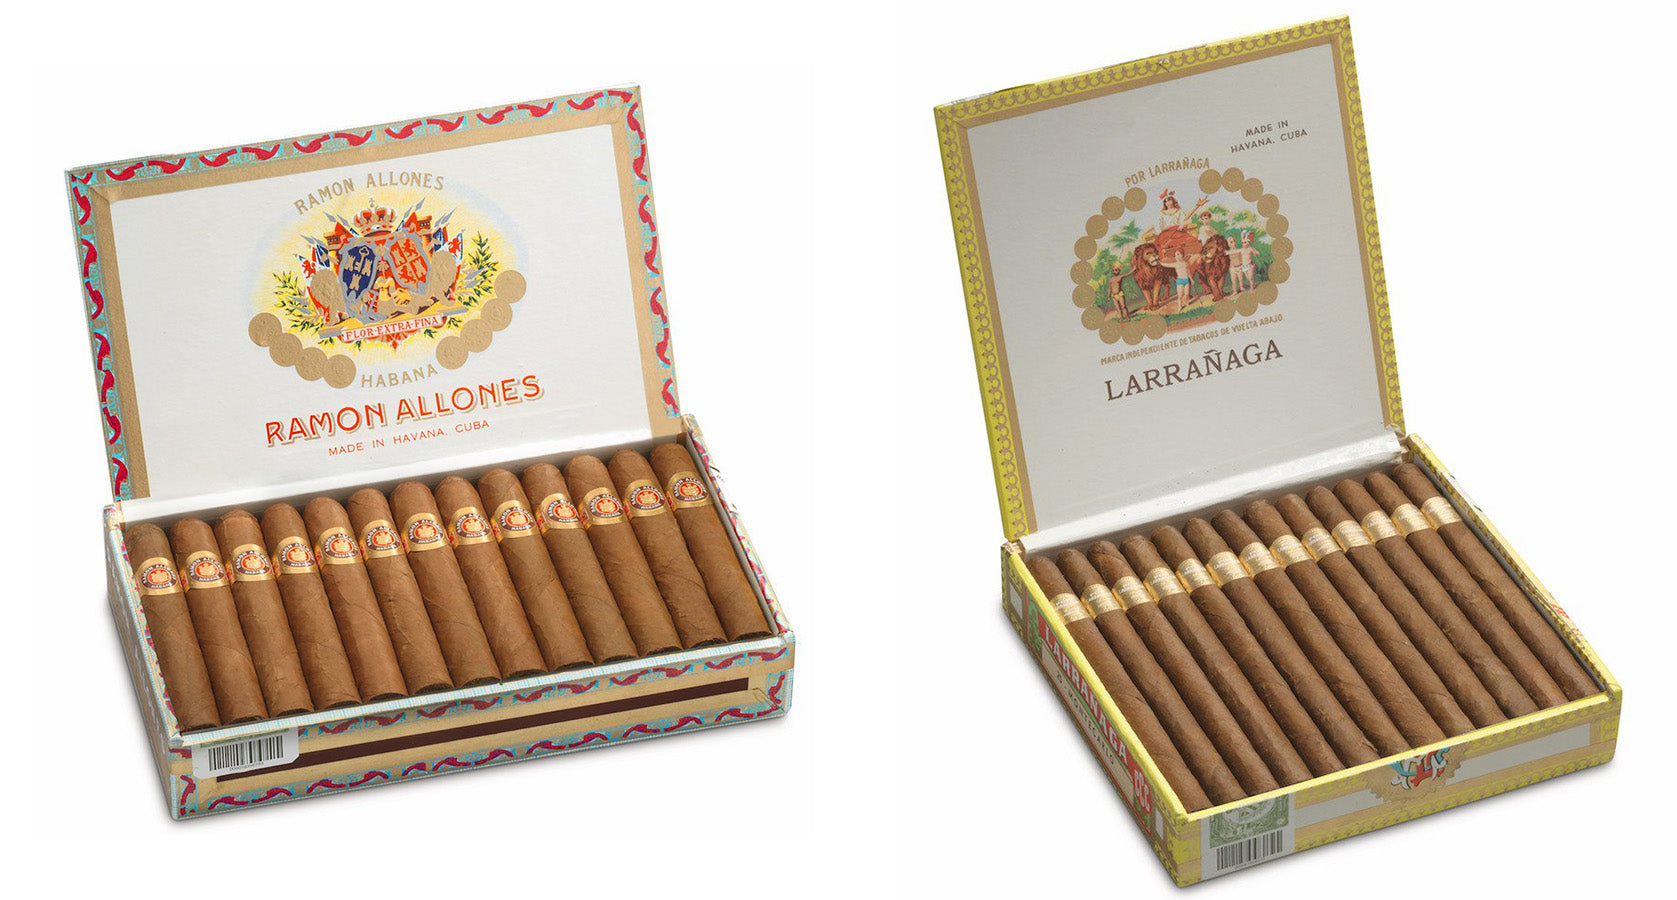 购买ramon allones小俱乐部coronas雪茄和来自egm雪茄的larranaga montecarlo雪茄